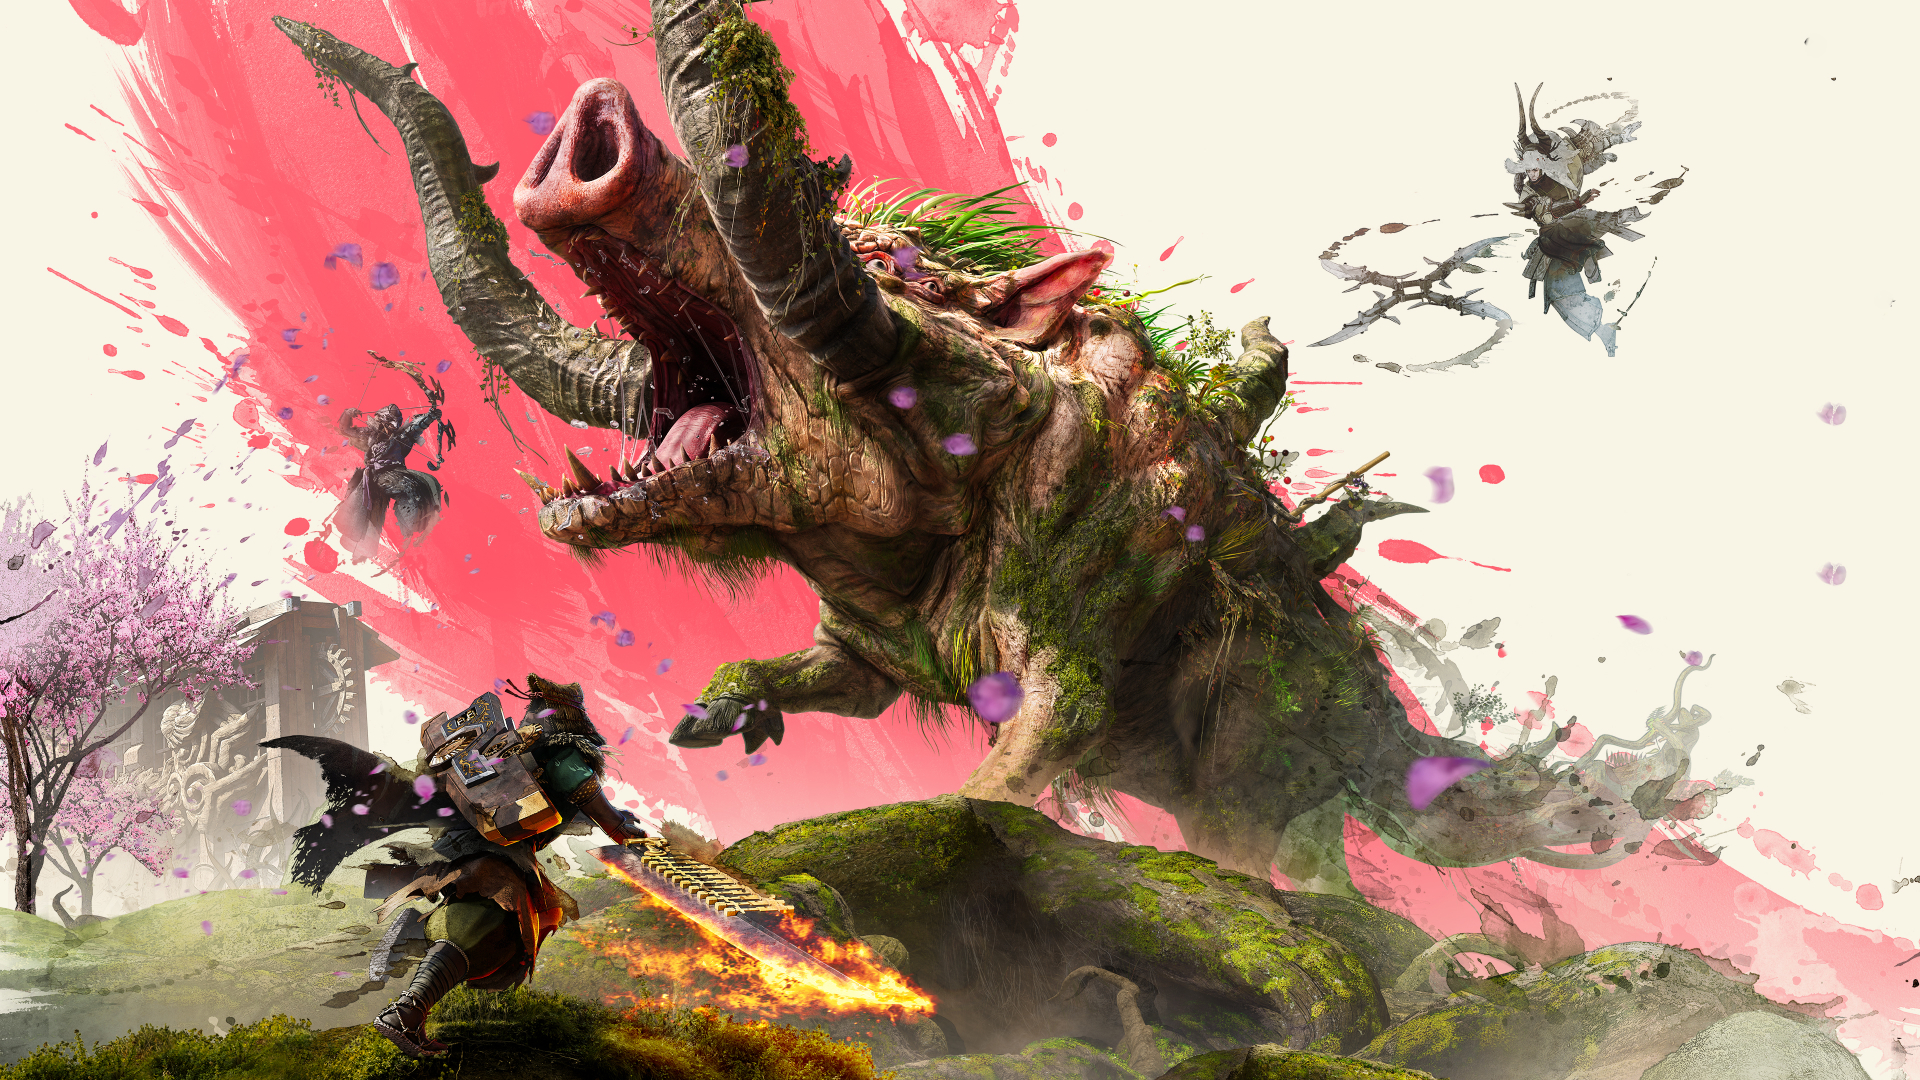 Capcom Announces Monster Hunter Wilds!